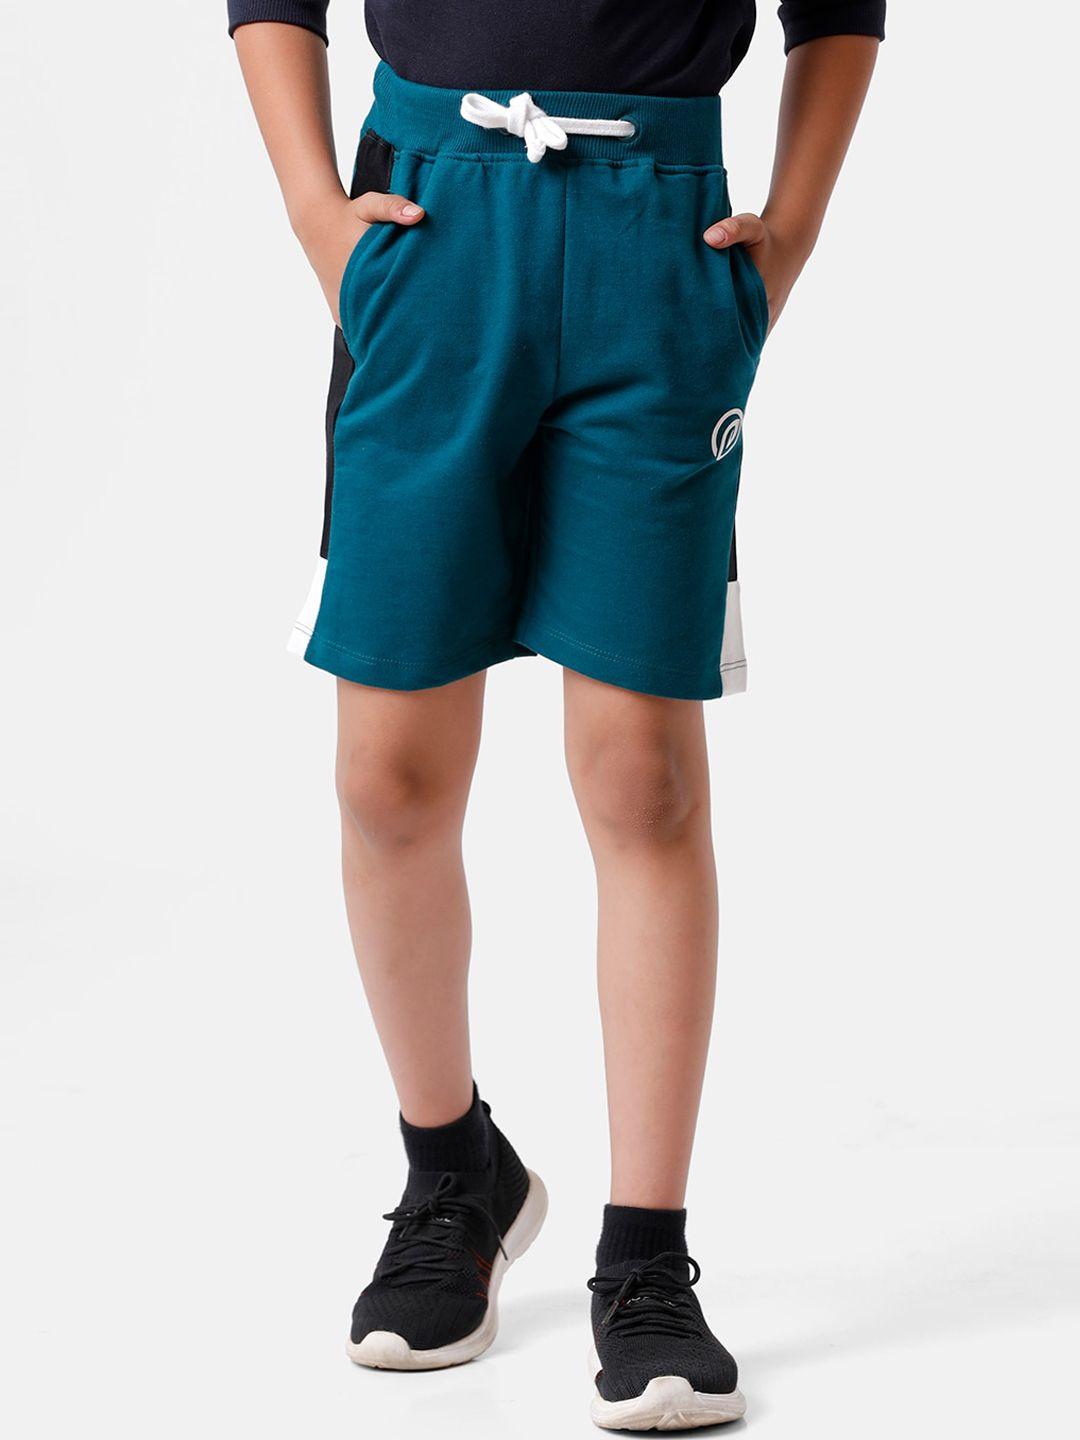 pipin-boys-teal-green-solid-shorts